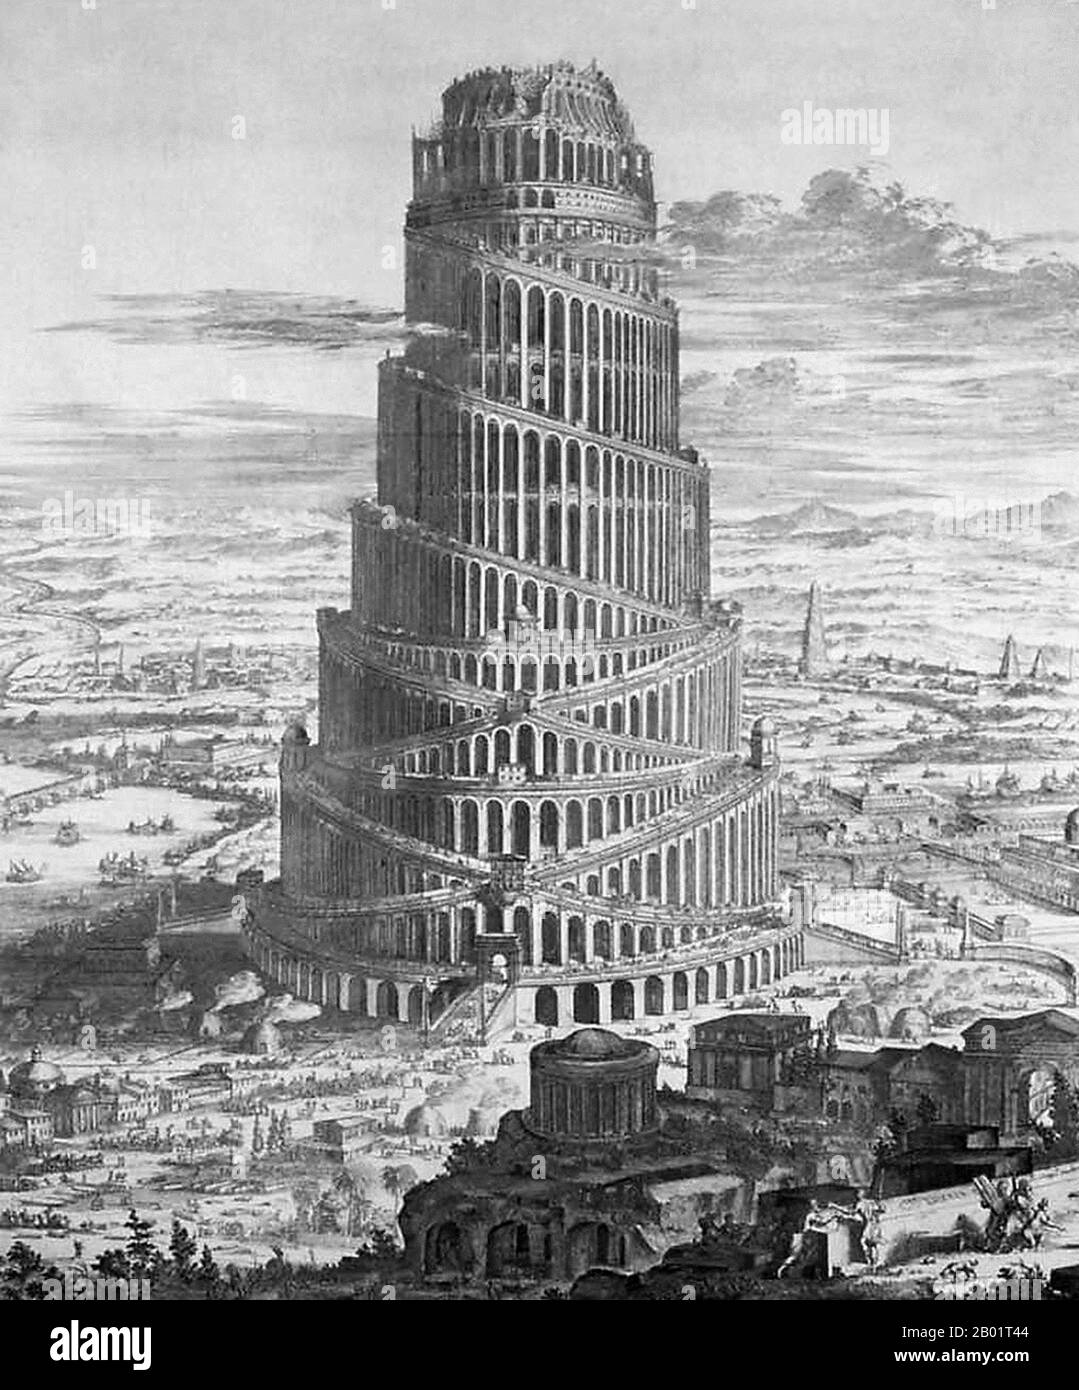 Pays-Bas/Irak/Mésopotamie : 'la construction de la Tour de Babel'. Gravure de Coenraet Decker (1650-1685) d'après 'Turris Babel' d'Athanasius Kircher (1602-1680), 1679. La Tour de Babel, selon le Livre de la Genèse, était une énorme tour construite dans la plaine de Shinar. Selon le récit biblique, une humanité unie des générations suivant le Grand Déluge, parlant une seule langue et migrant de l'est, est venue au pays de Shinar, où ils ont résolu de construire une ville avec une tour "avec son sommet dans les cieux... de peur que nous ne soyons dispersés à l'étranger sur la face de la Terre". Banque D'Images